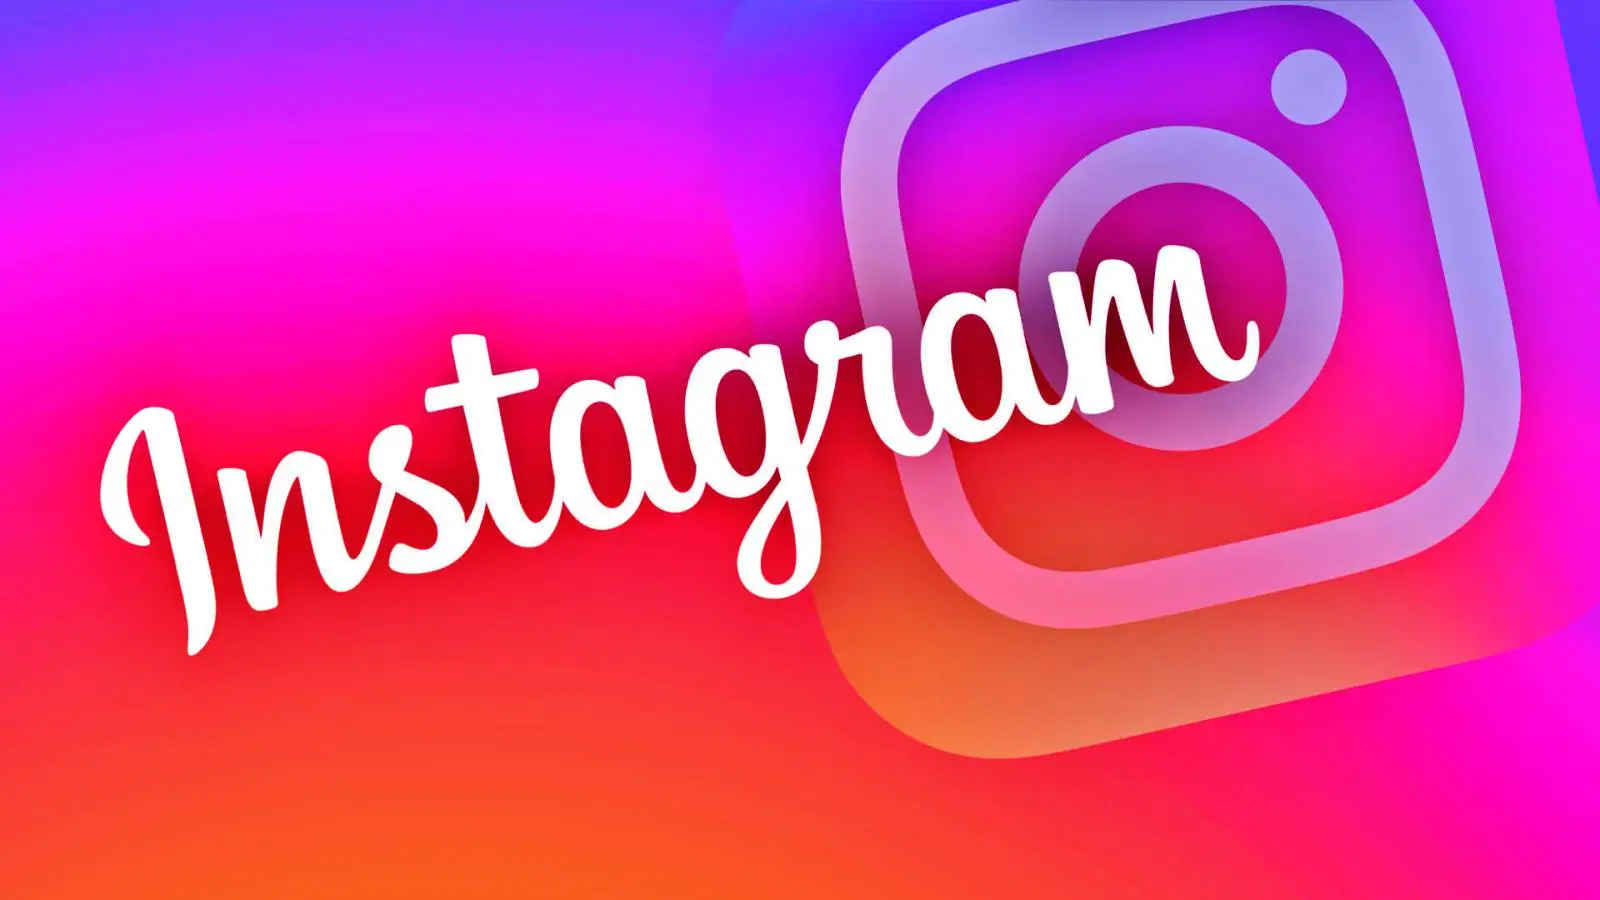 Instagram a une nouvelle mise à jour, voici les changements apportés aux téléphones